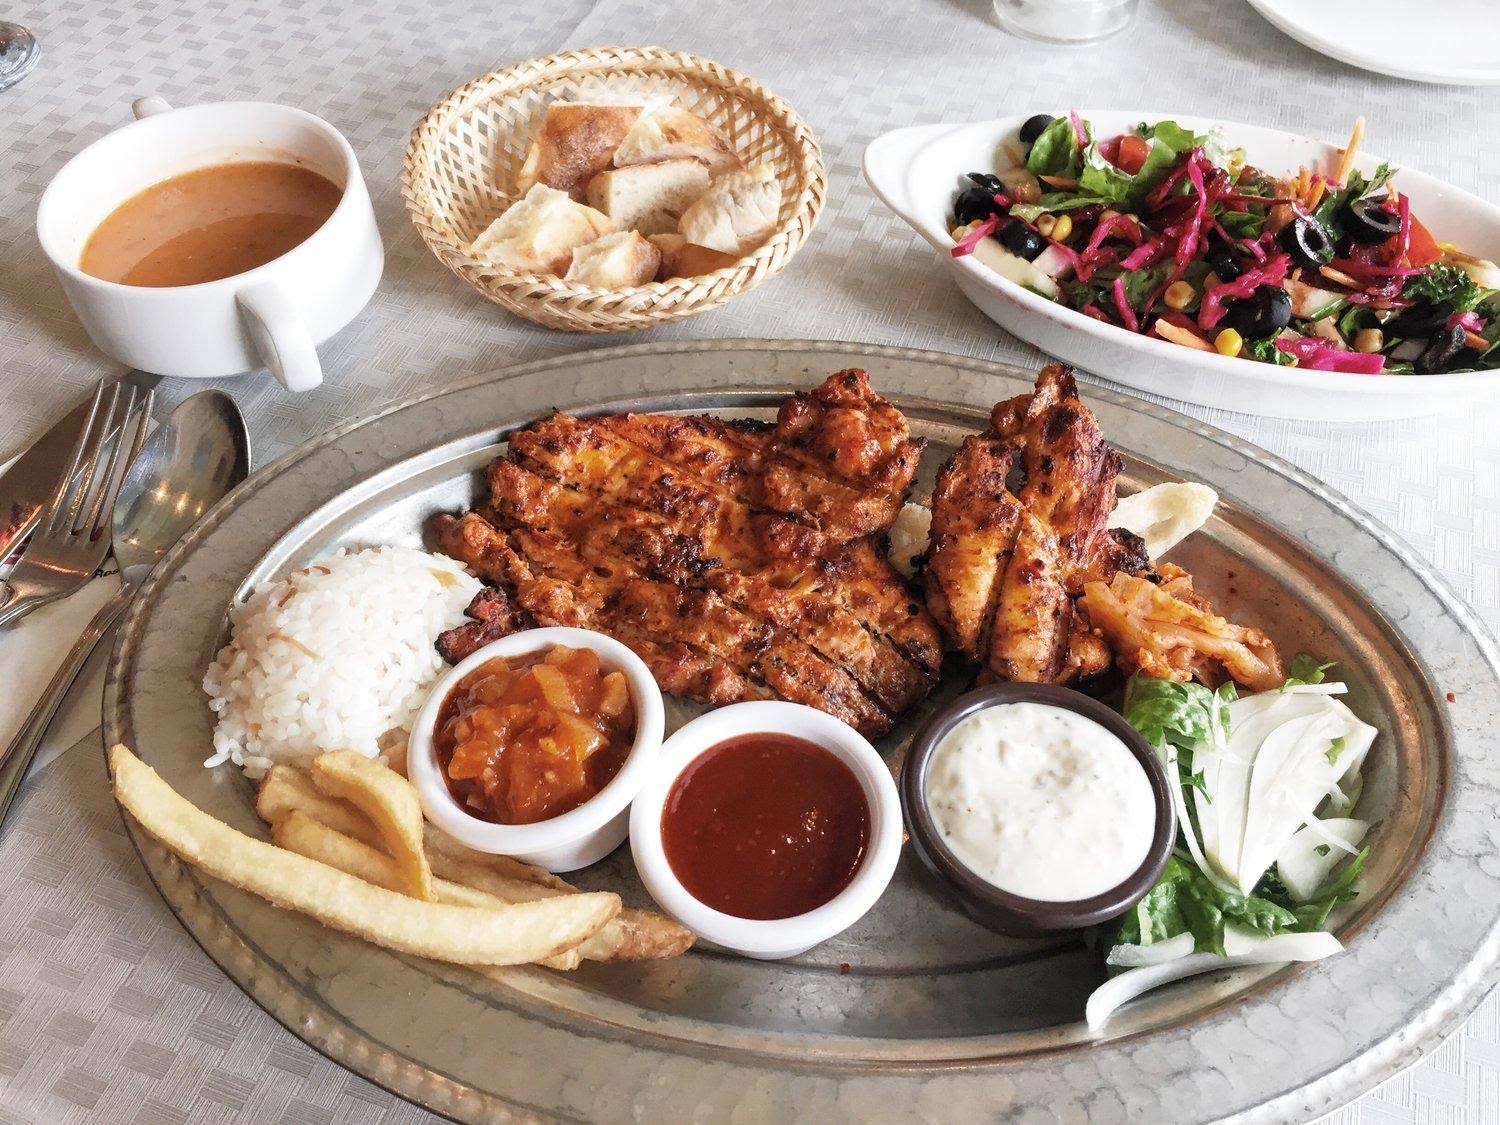 Tandoor Modern Indian Cuisine - Best restaurant for Halal food in Hanoi